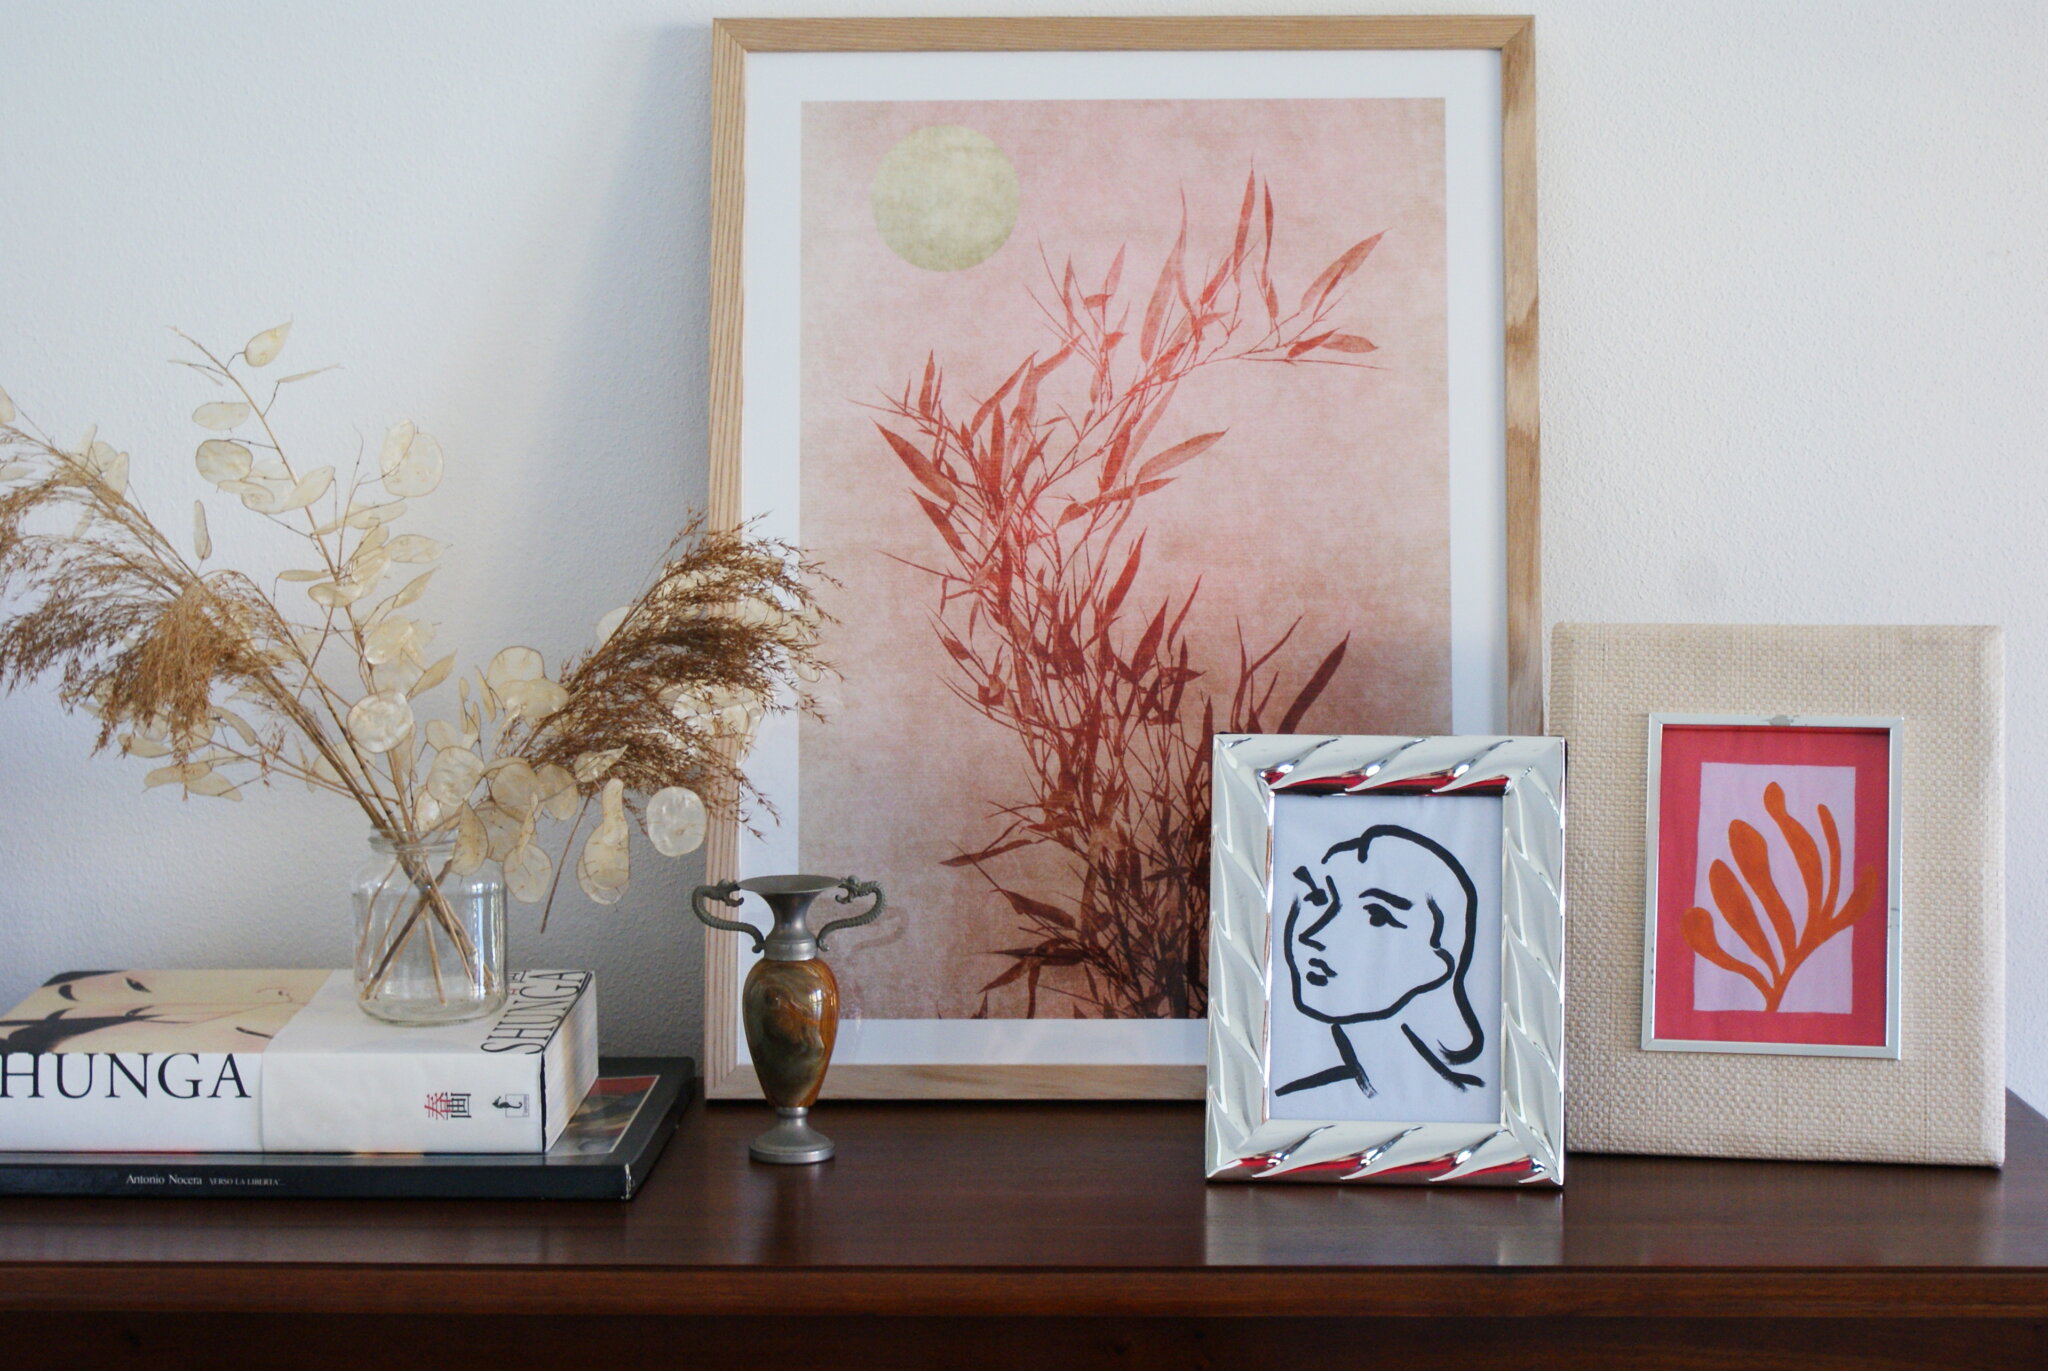 diy minimalist paintings inspired henri matisse art try make home beginner tutorial easy